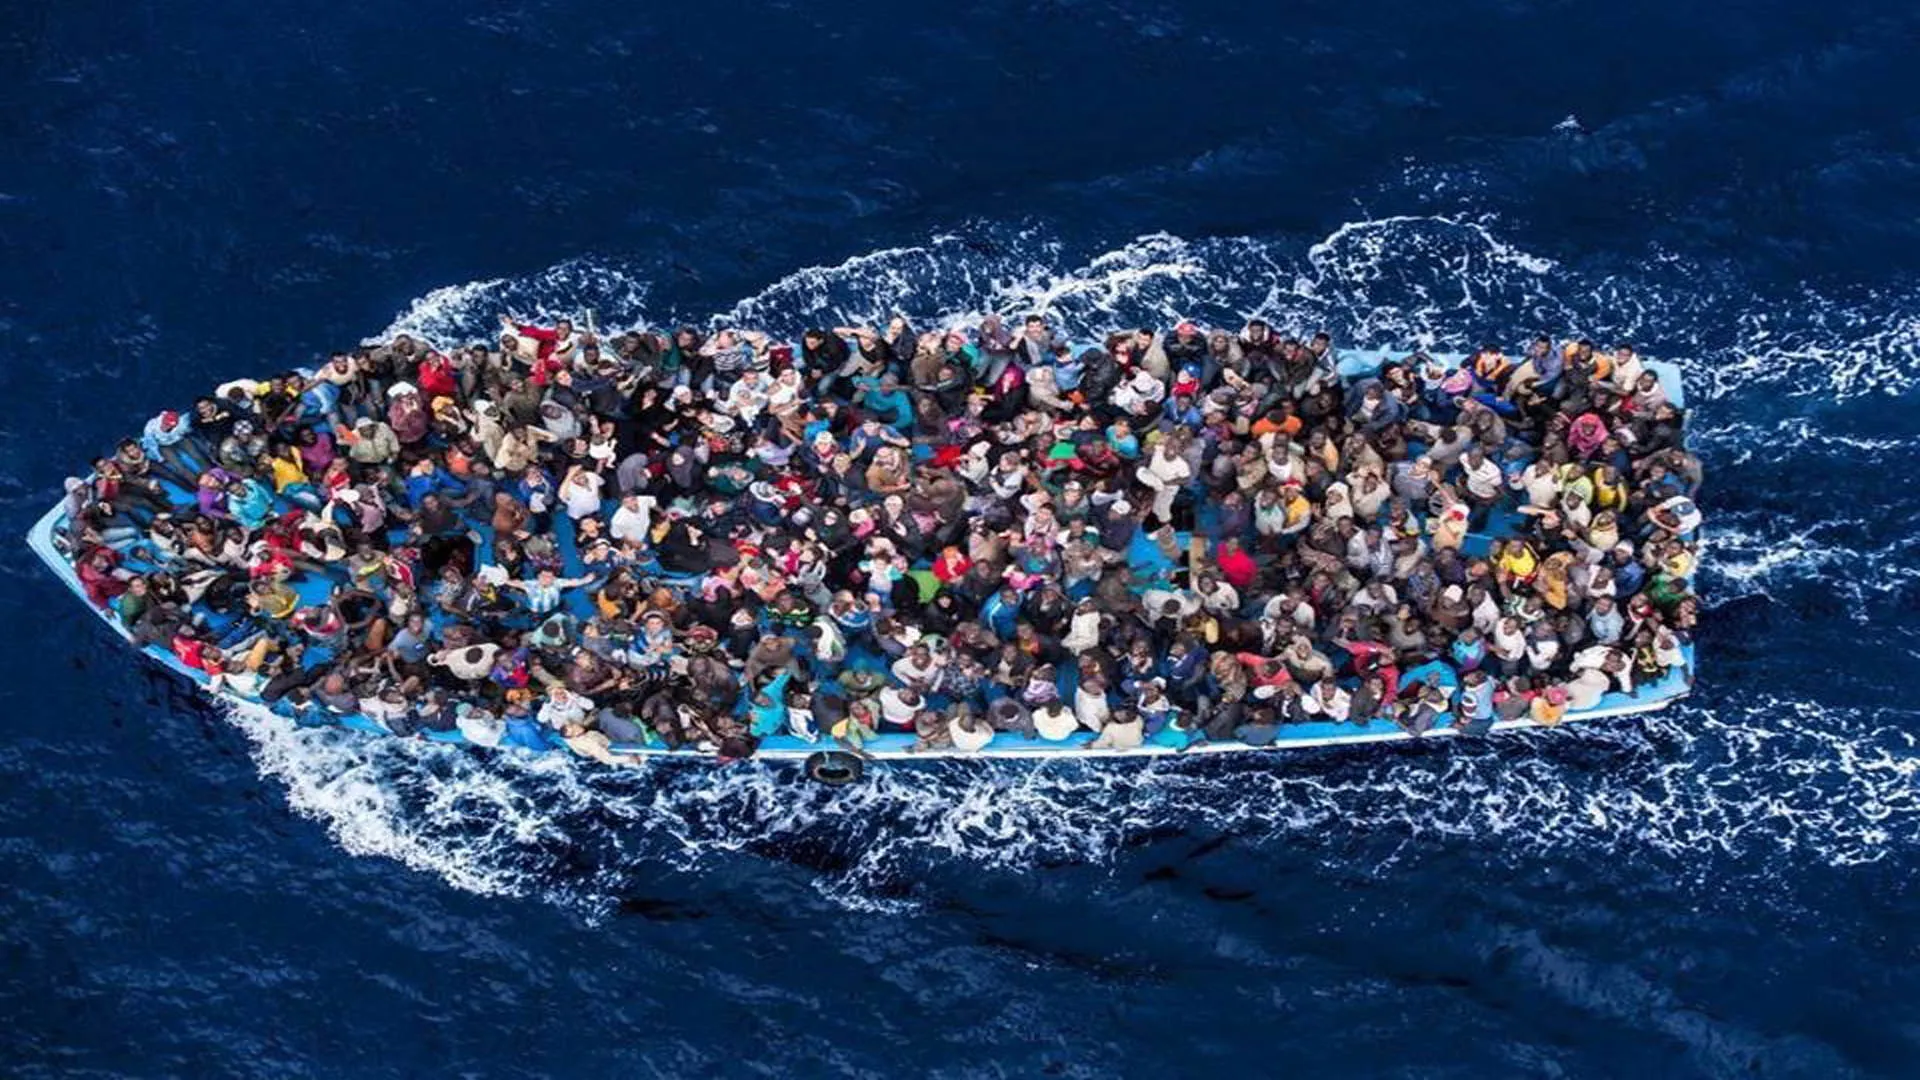 "أطباء بلا حدود" تطالب بإنشاء "نظام إنقاذ أوروبي" لتخصيص ميناء آمن لطالبي اللجوء